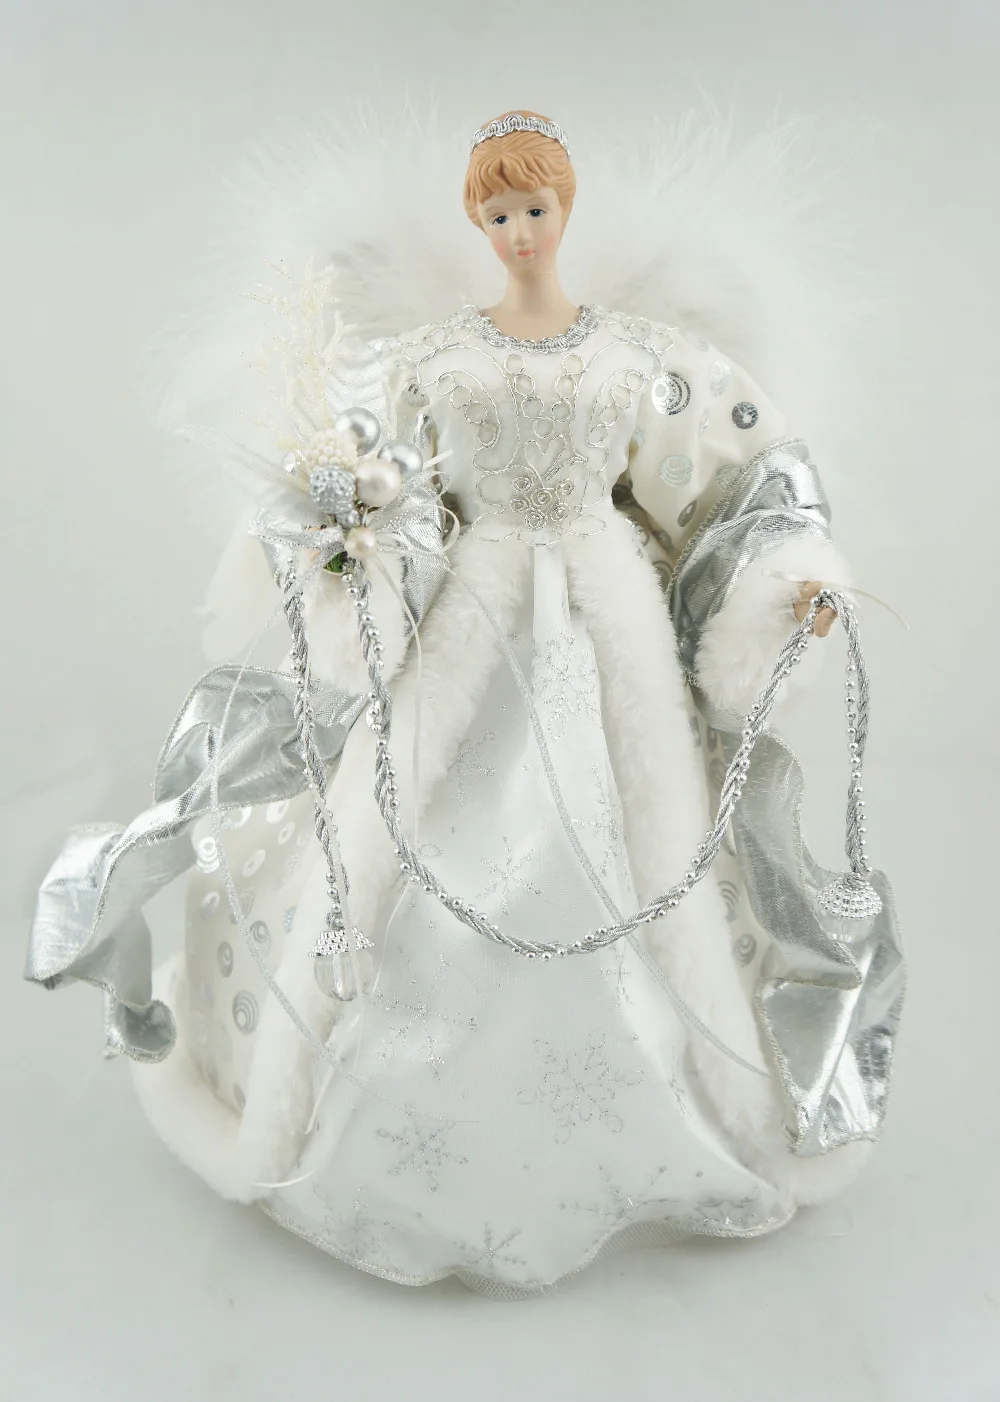 Cosette коробка для хранения конфет ангел Рождество фарфоровая кукла подарки 12 дюймов(30 см